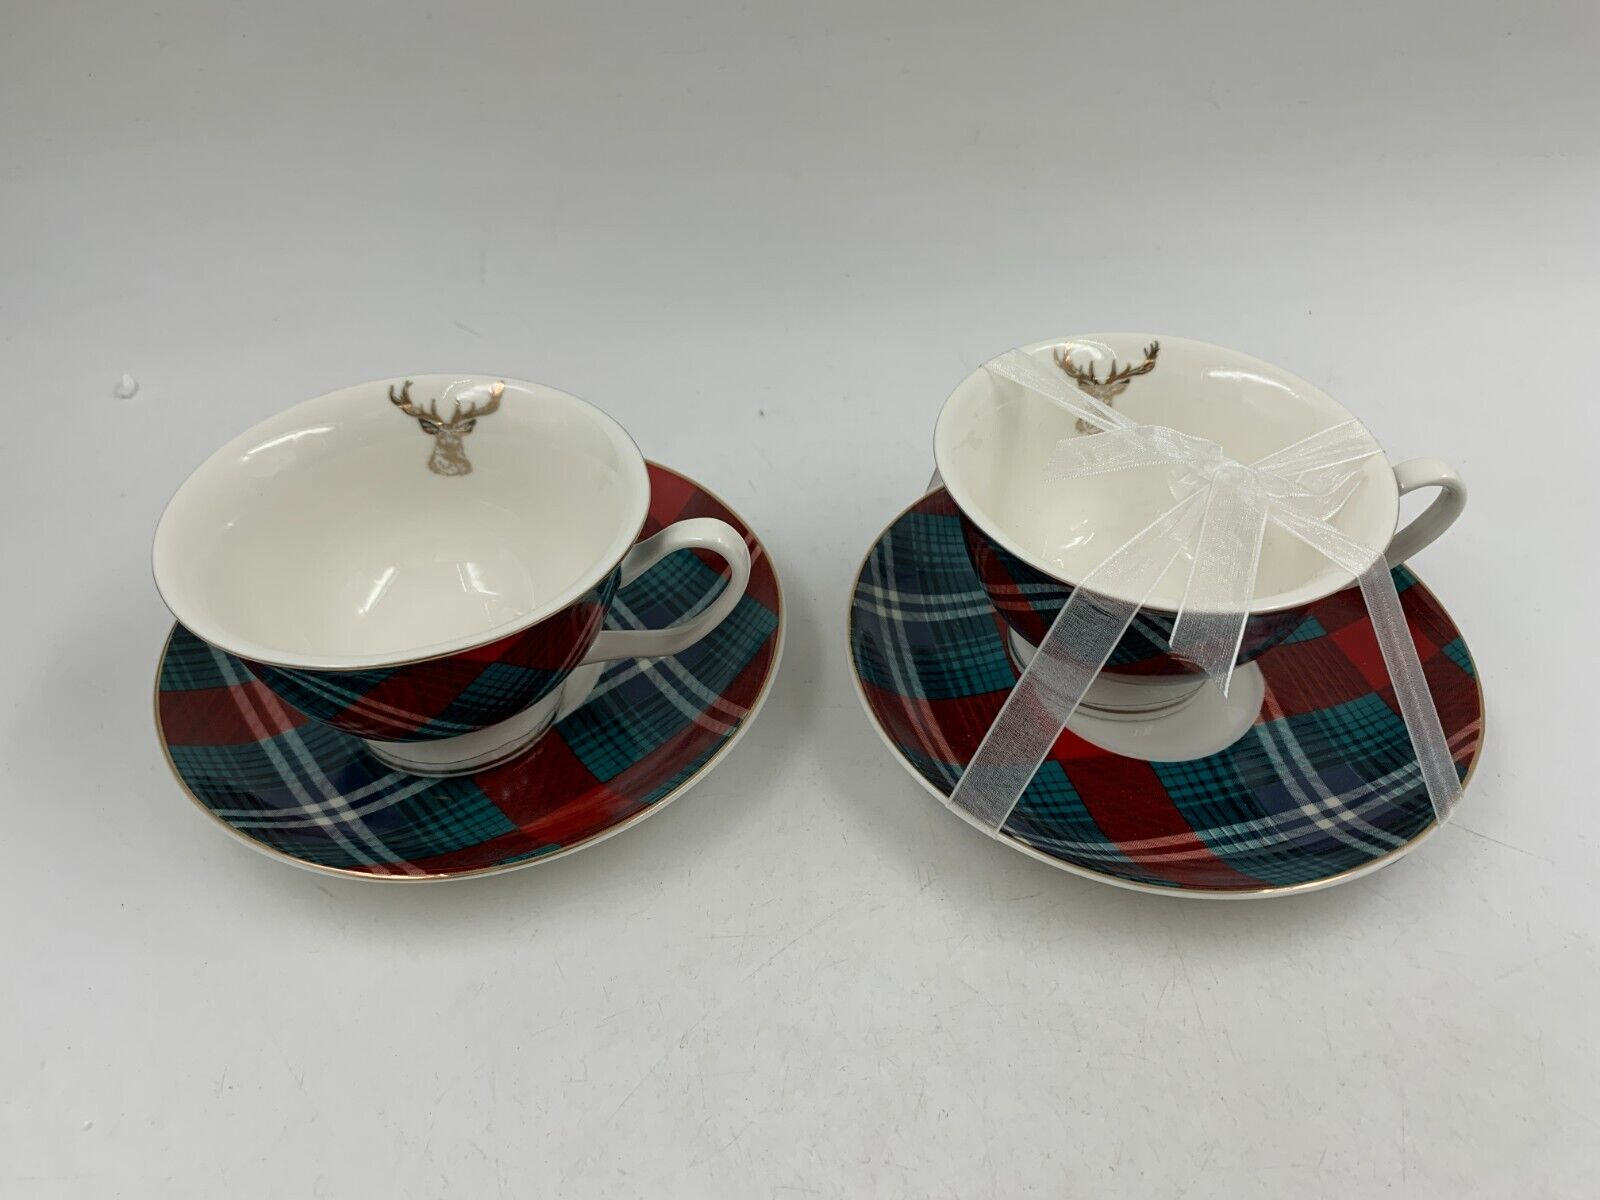 Elegance Porcelain 14oz Winter Teacup & 5in Saucer Set For 2 AA02B31009